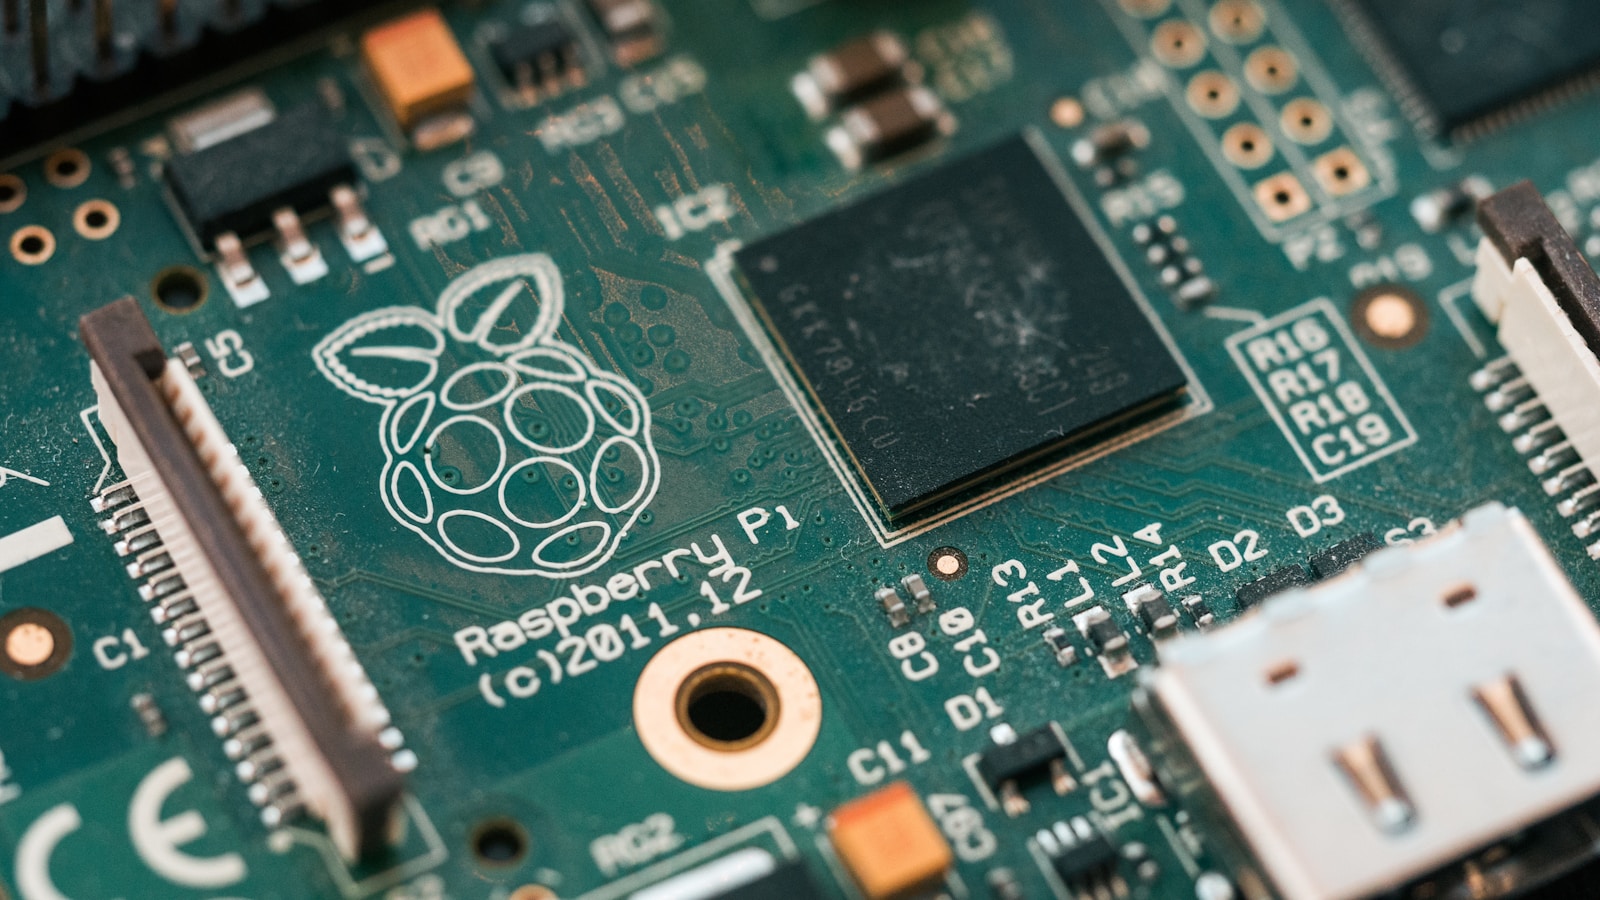 Raspberry Pi tout ce qu'il faut savoir sur cette révolution miniature